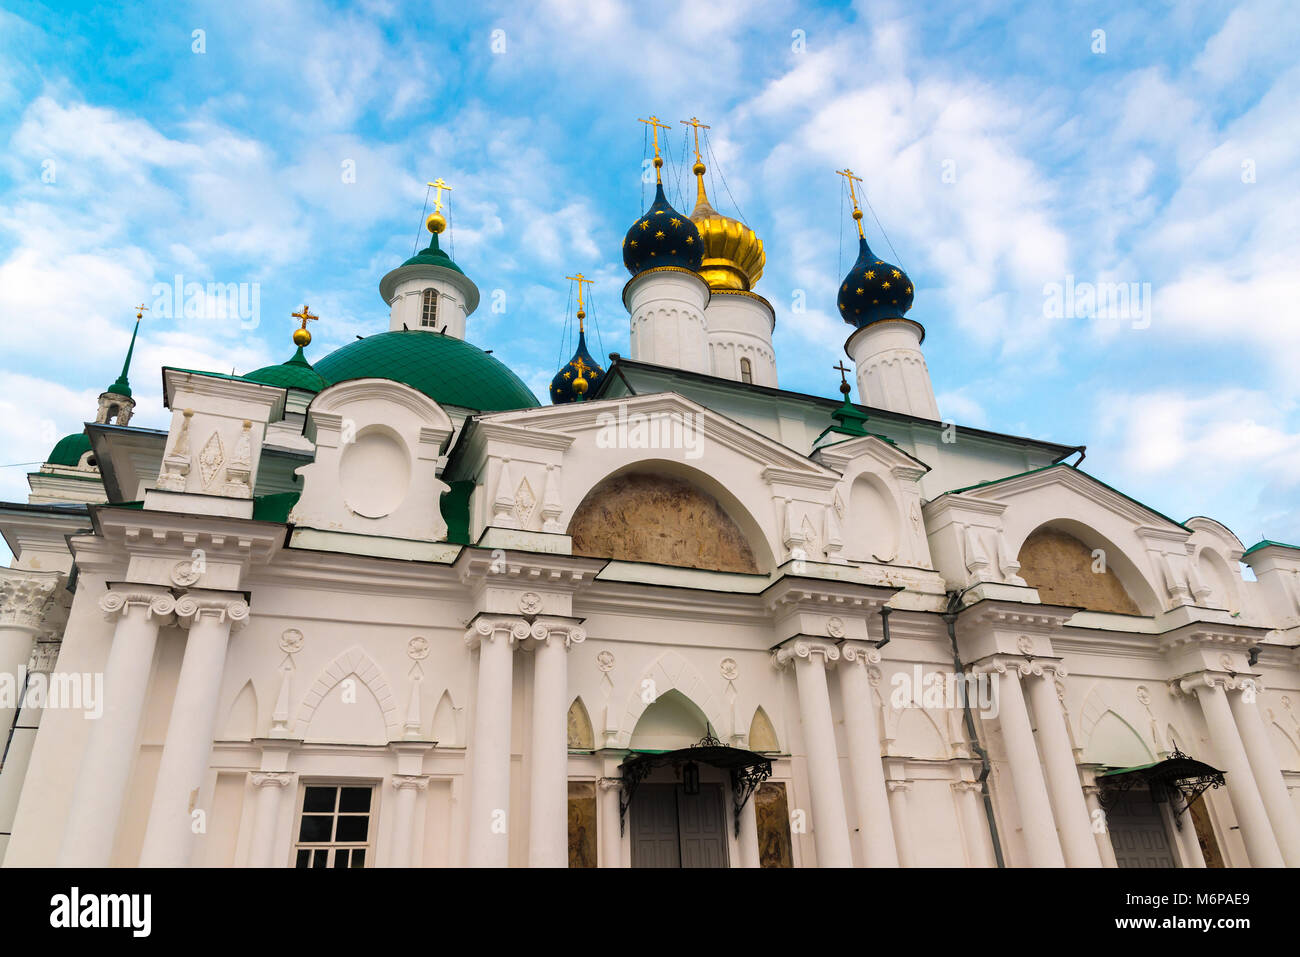 Yakovlevsky cathédrales Maison Spaso Dimitriev dans un monastère de Rostov Veliki, Russie Banque D'Images